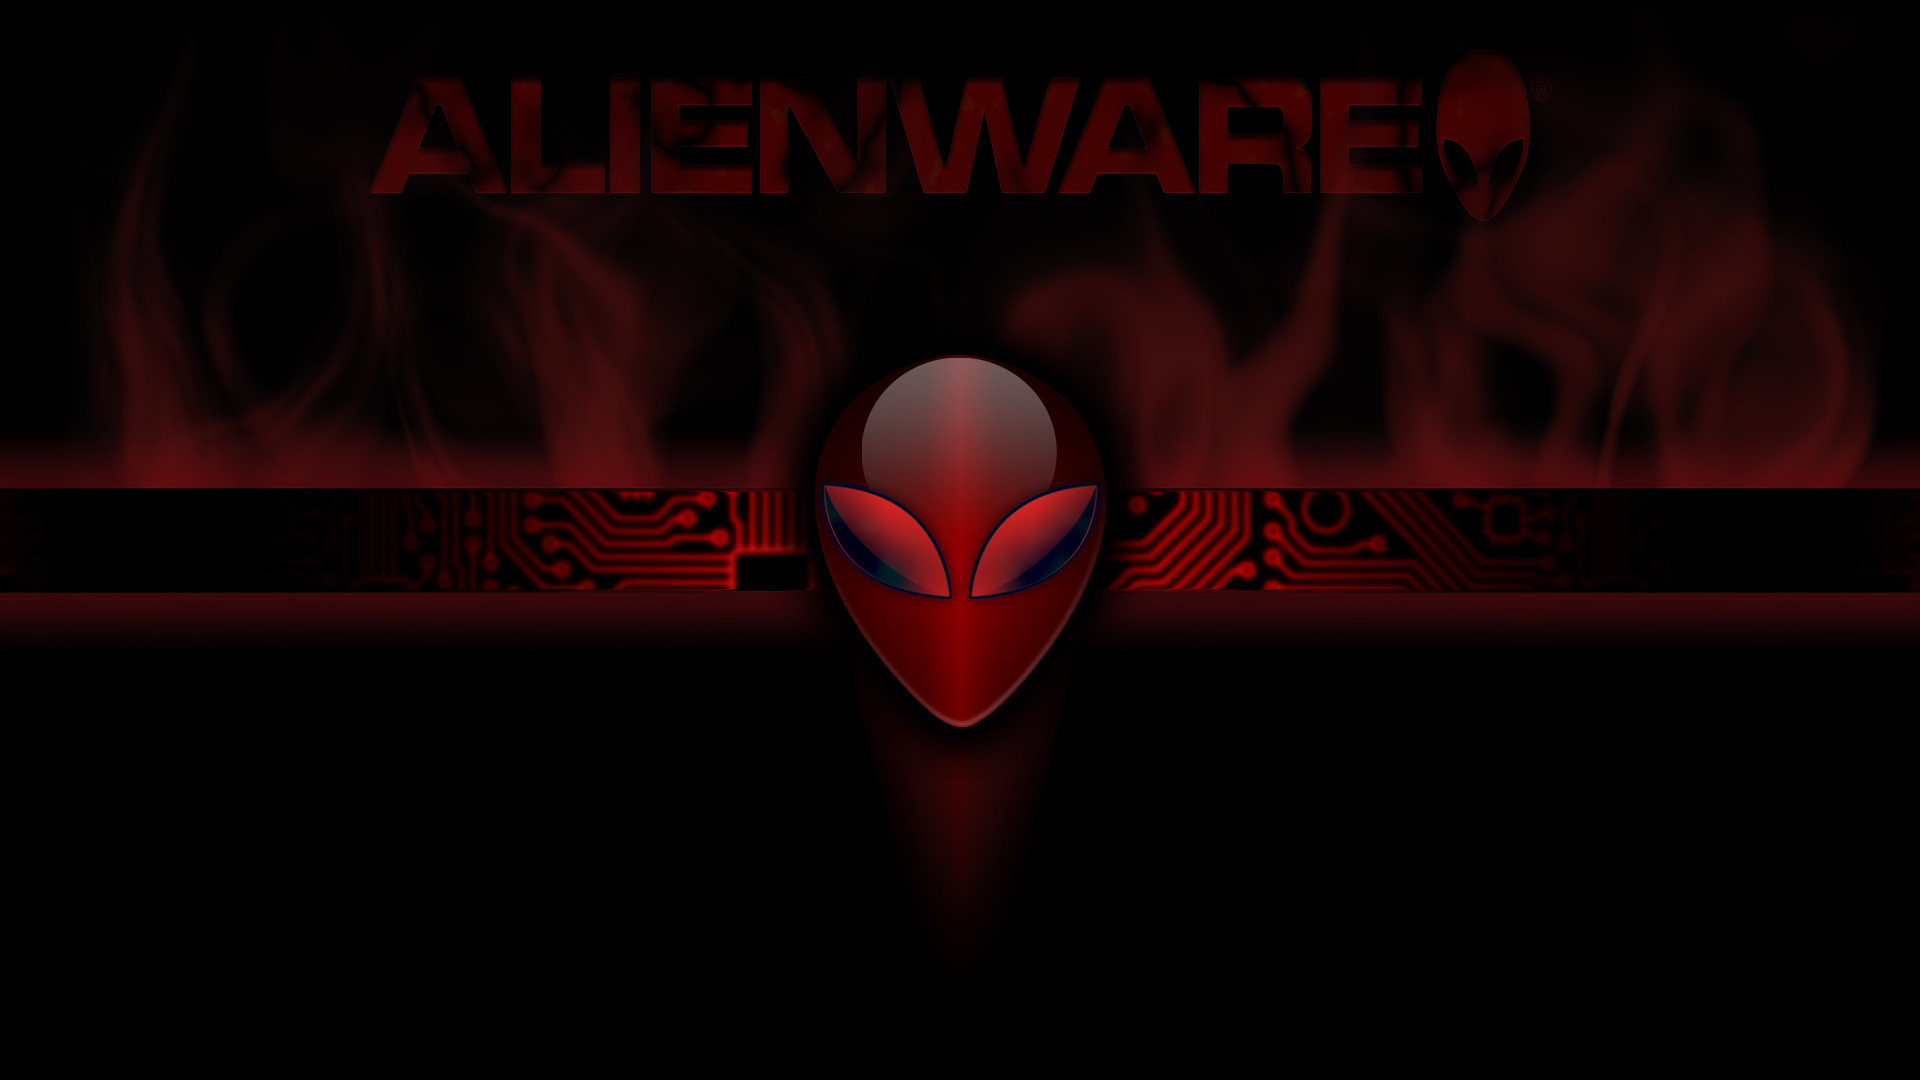 1920x1080 1920x1200 Alienware Wallpaper  Hd 80 Images